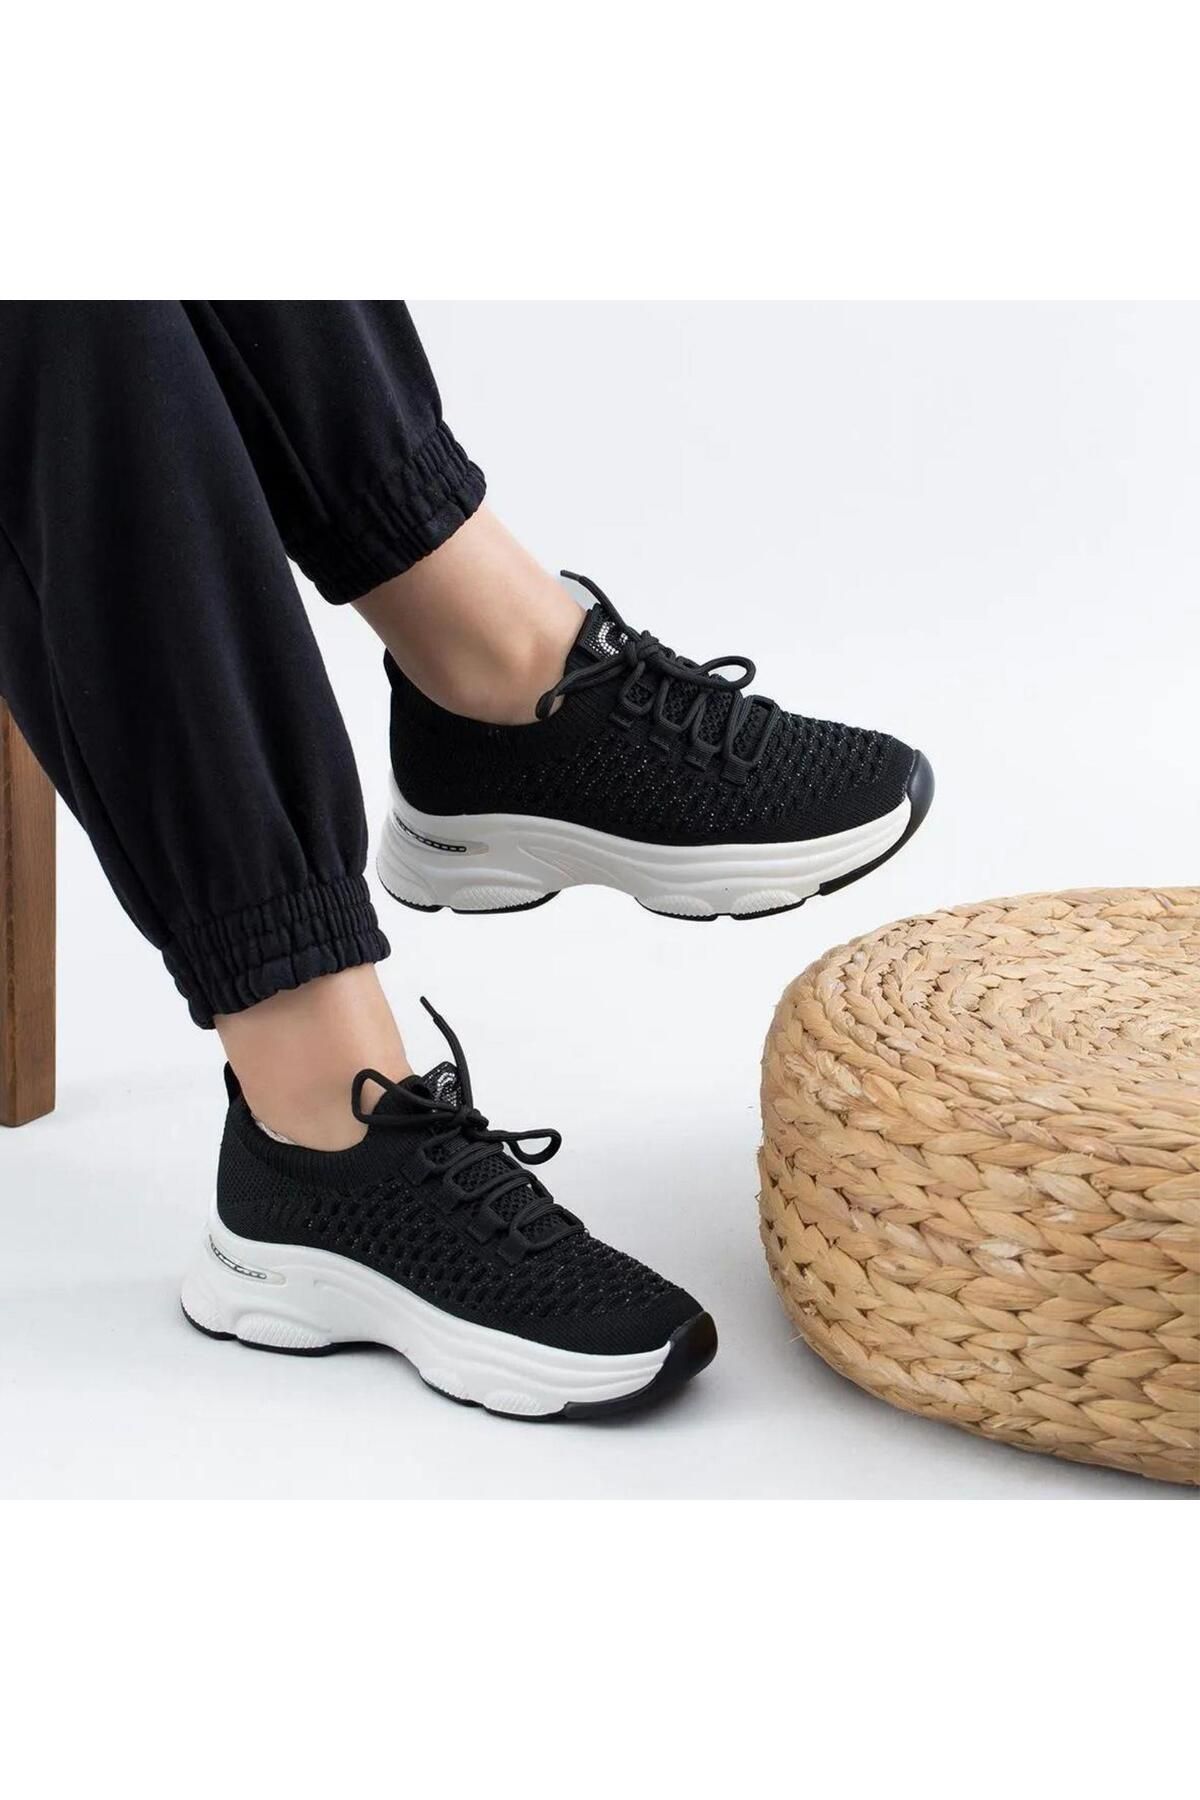 Guja 24y309-3 Ithal Kadın Günlük Yürüyüş Spor Ayakkabısı